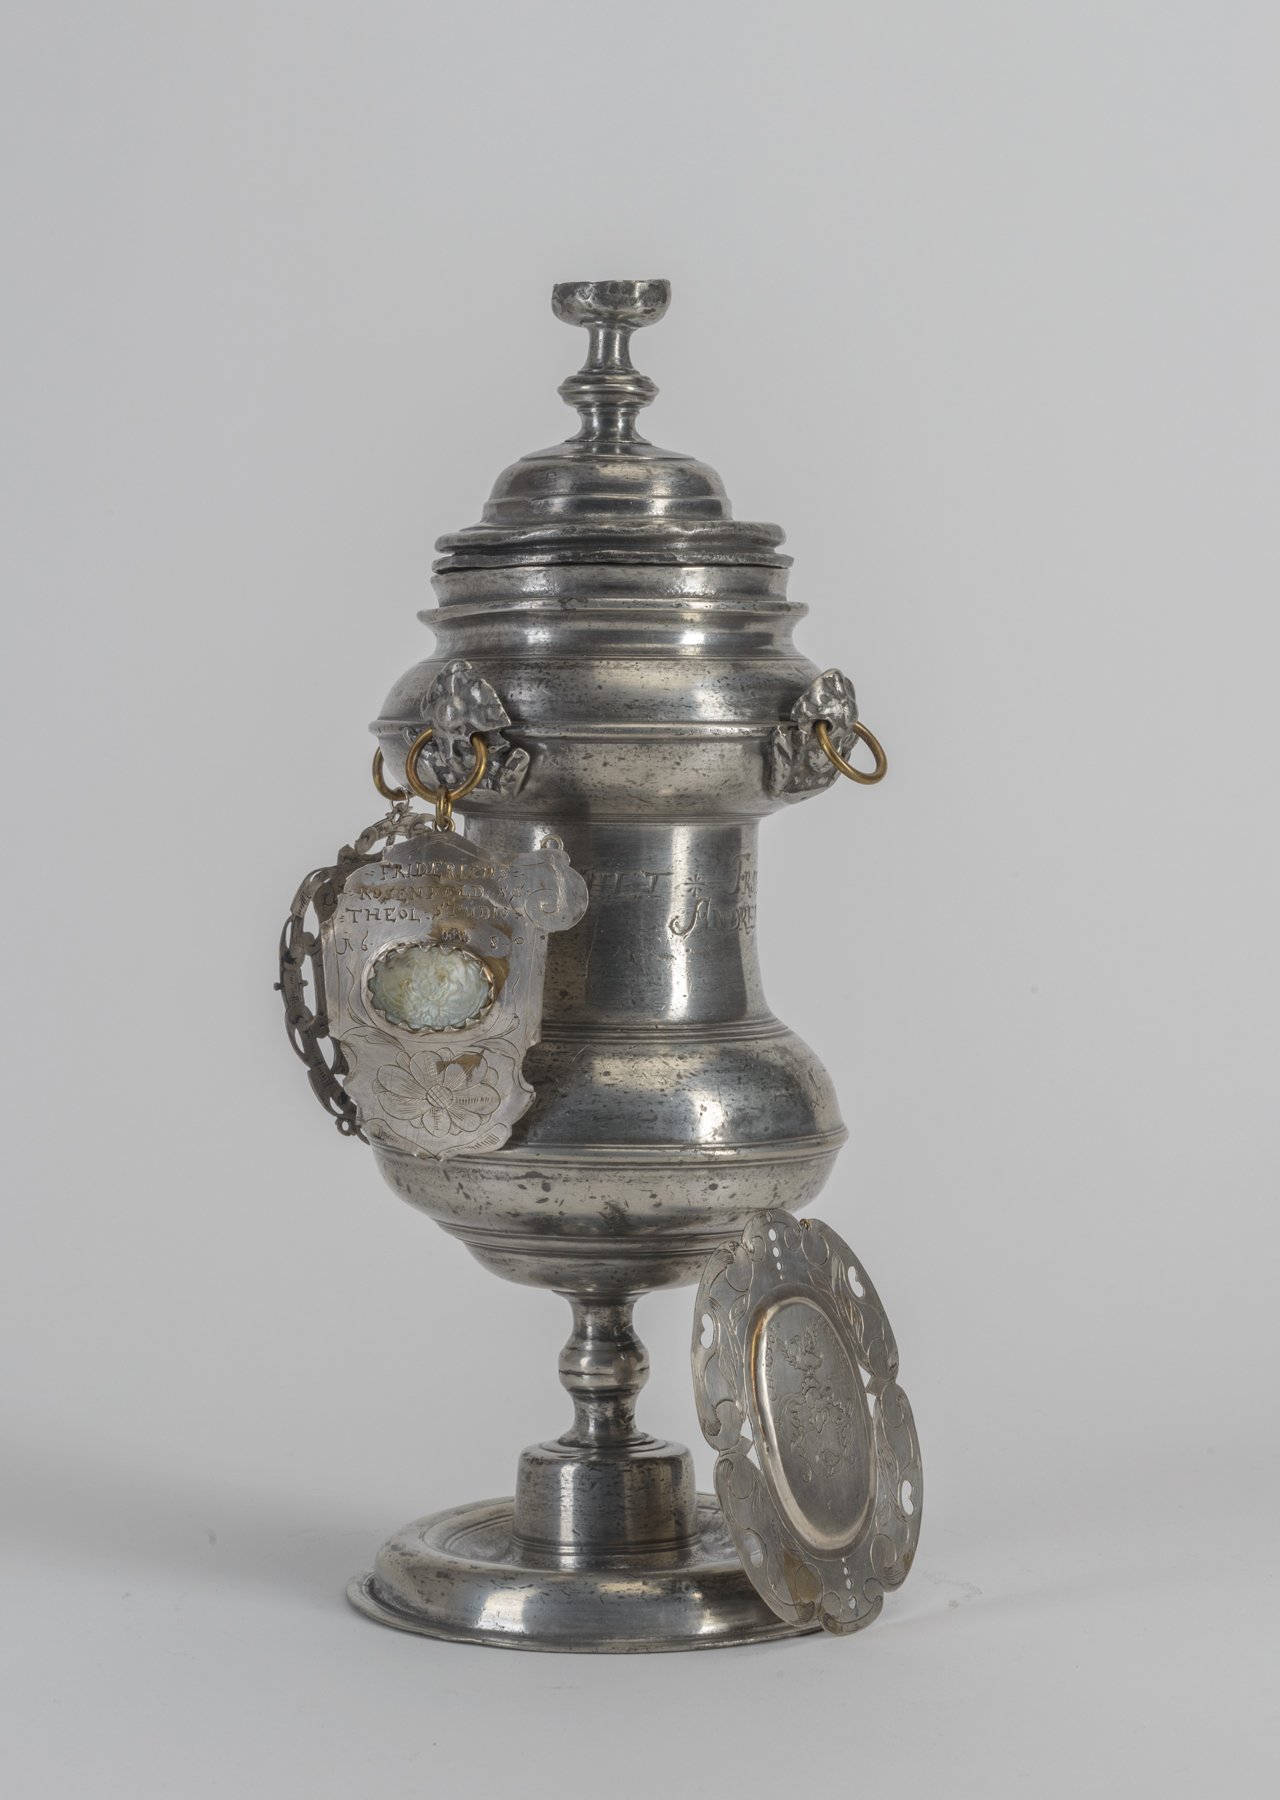 Willkomm-Pokal des Brandenburger Tuchmachergilde, 1680/1685 (Stadtmuseum Brandenburg an der Havel CC BY-NC-SA)